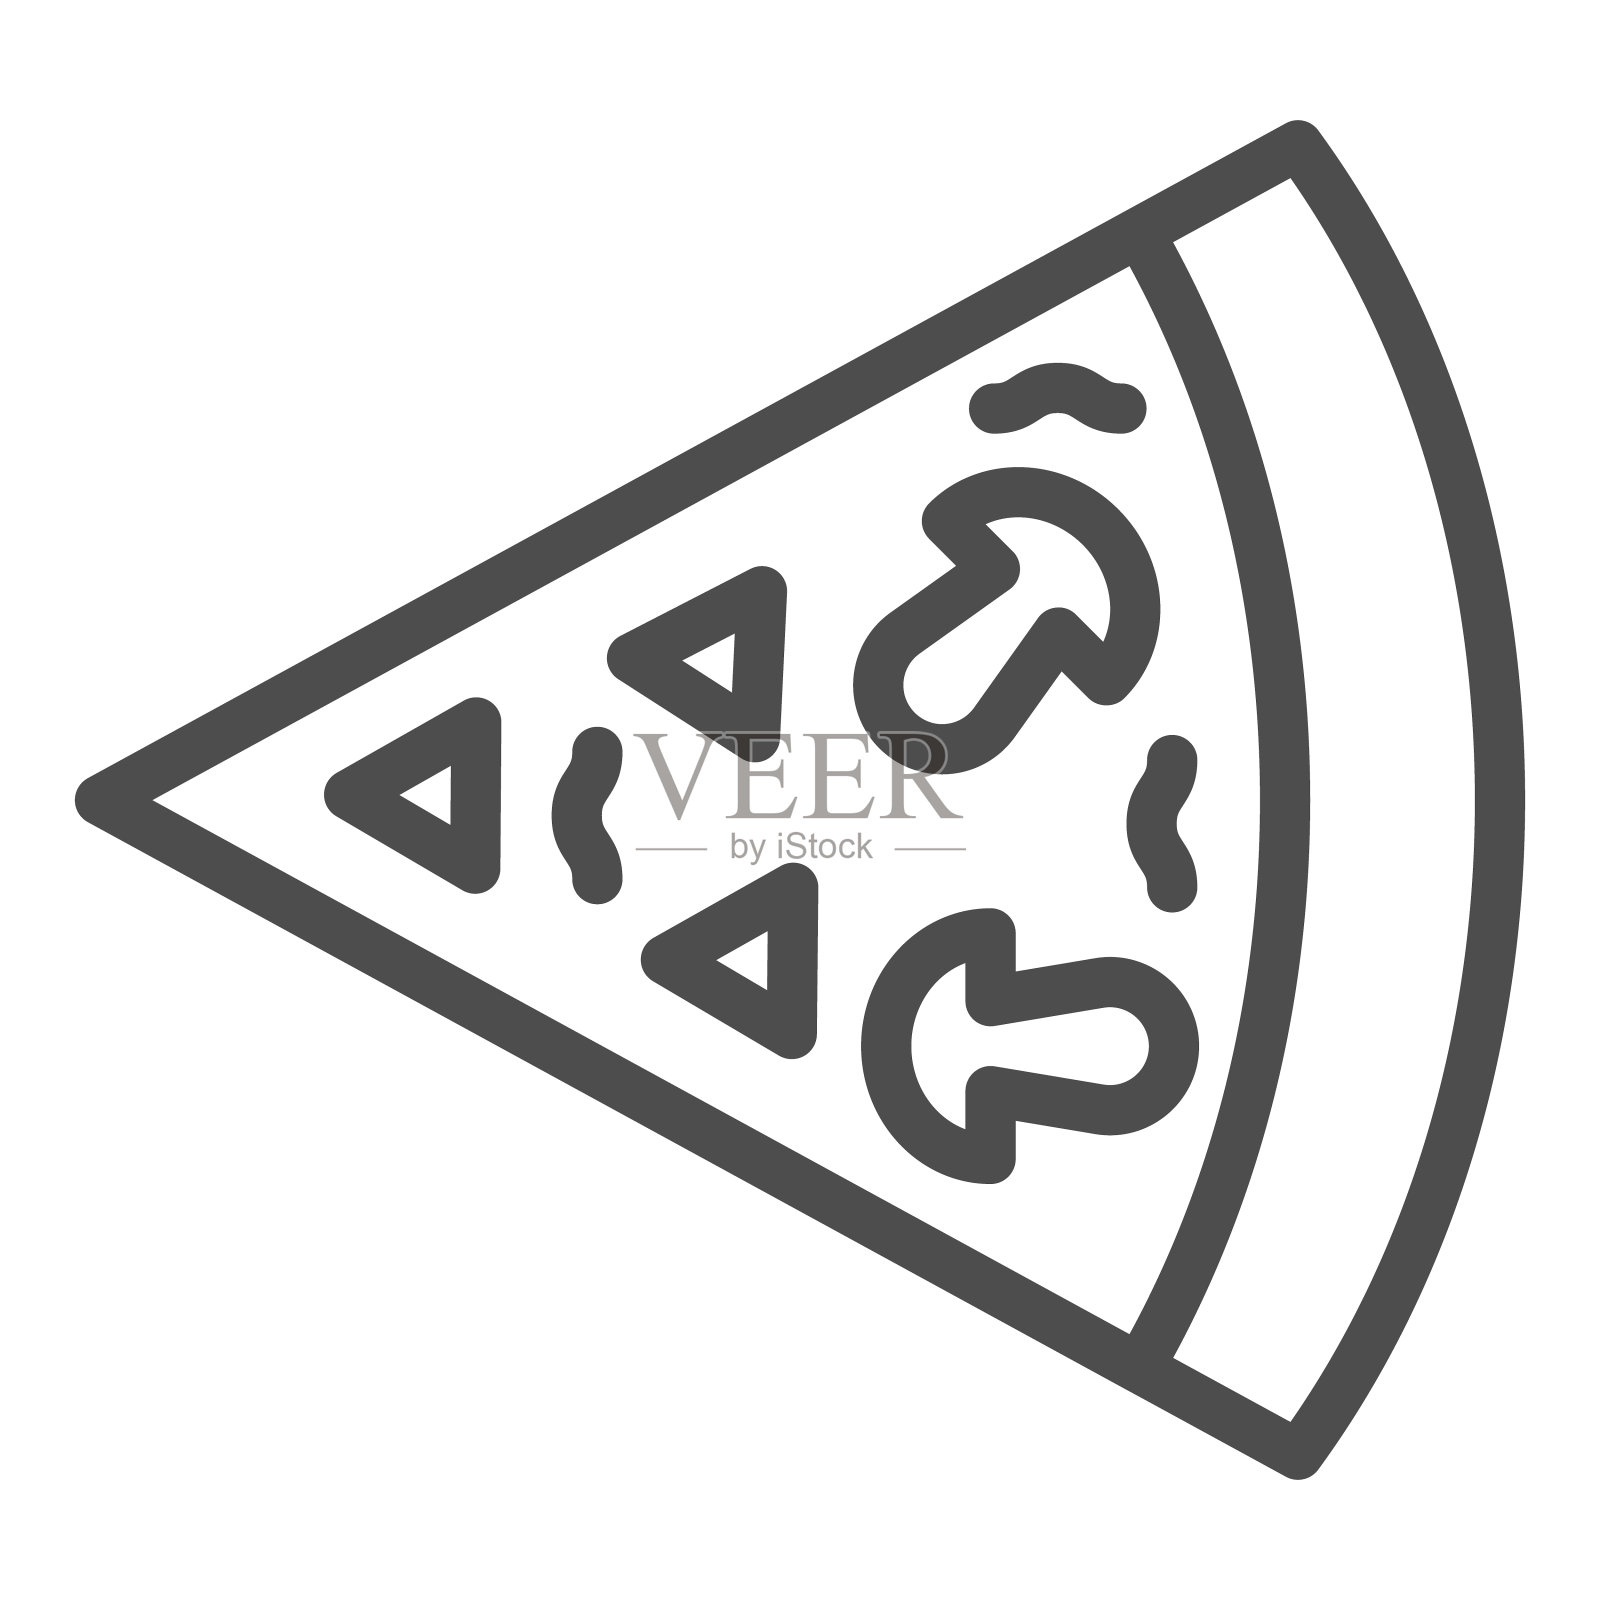 蘑菇披萨切片线图标。一块小圆面包，食物部分有蘑菇符号，白色背景上有轮廓式象形文字。面包房标识的移动概念和网页设计。矢量图形。插画图片素材